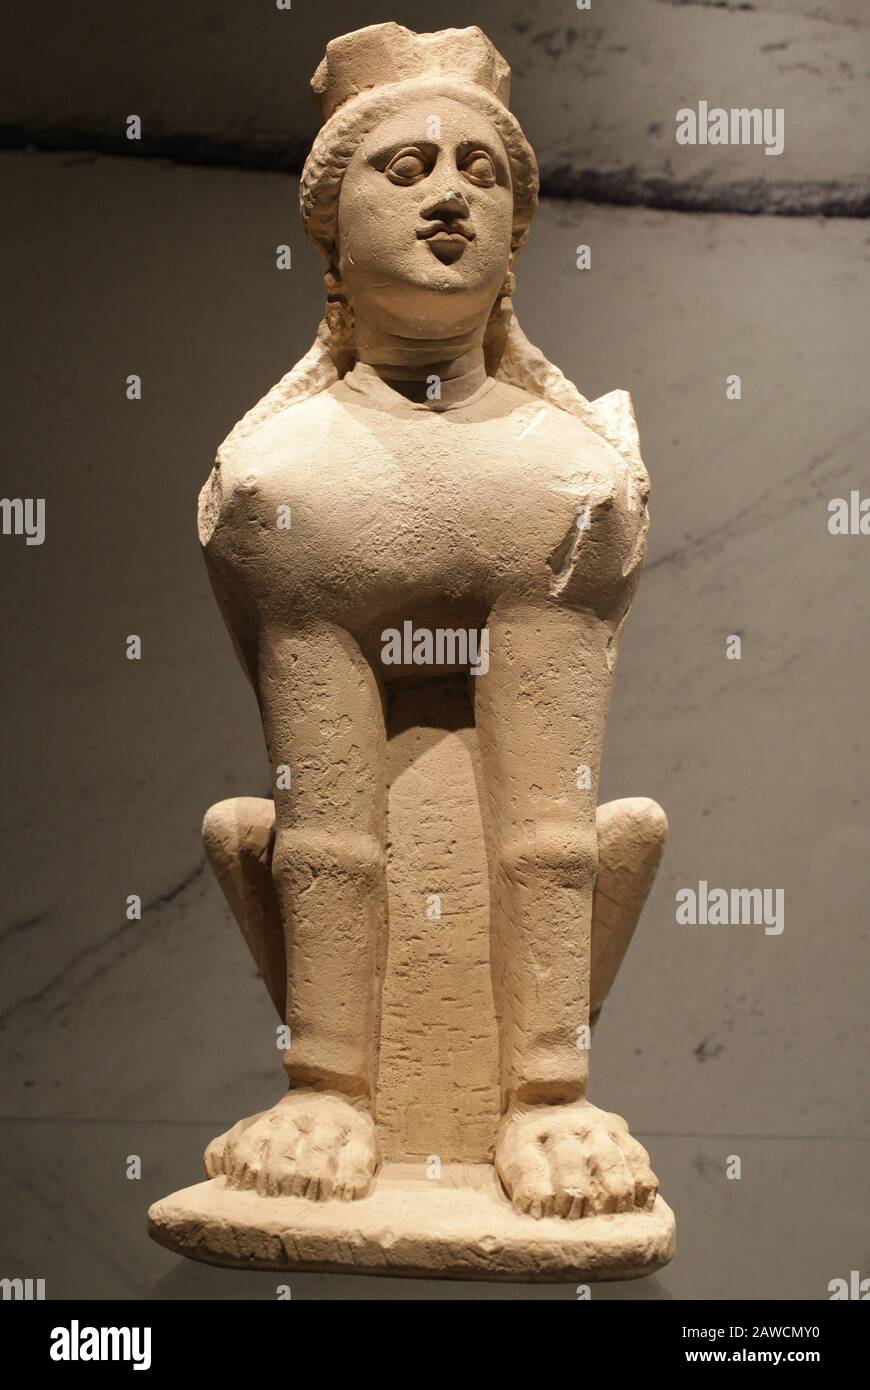 Seduta Sphynx.Sphinx statua.Davlos/Agios Iakovos a Cipro.400-300 a.C. influenza greca nel periodo classico a cipro Foto Stock